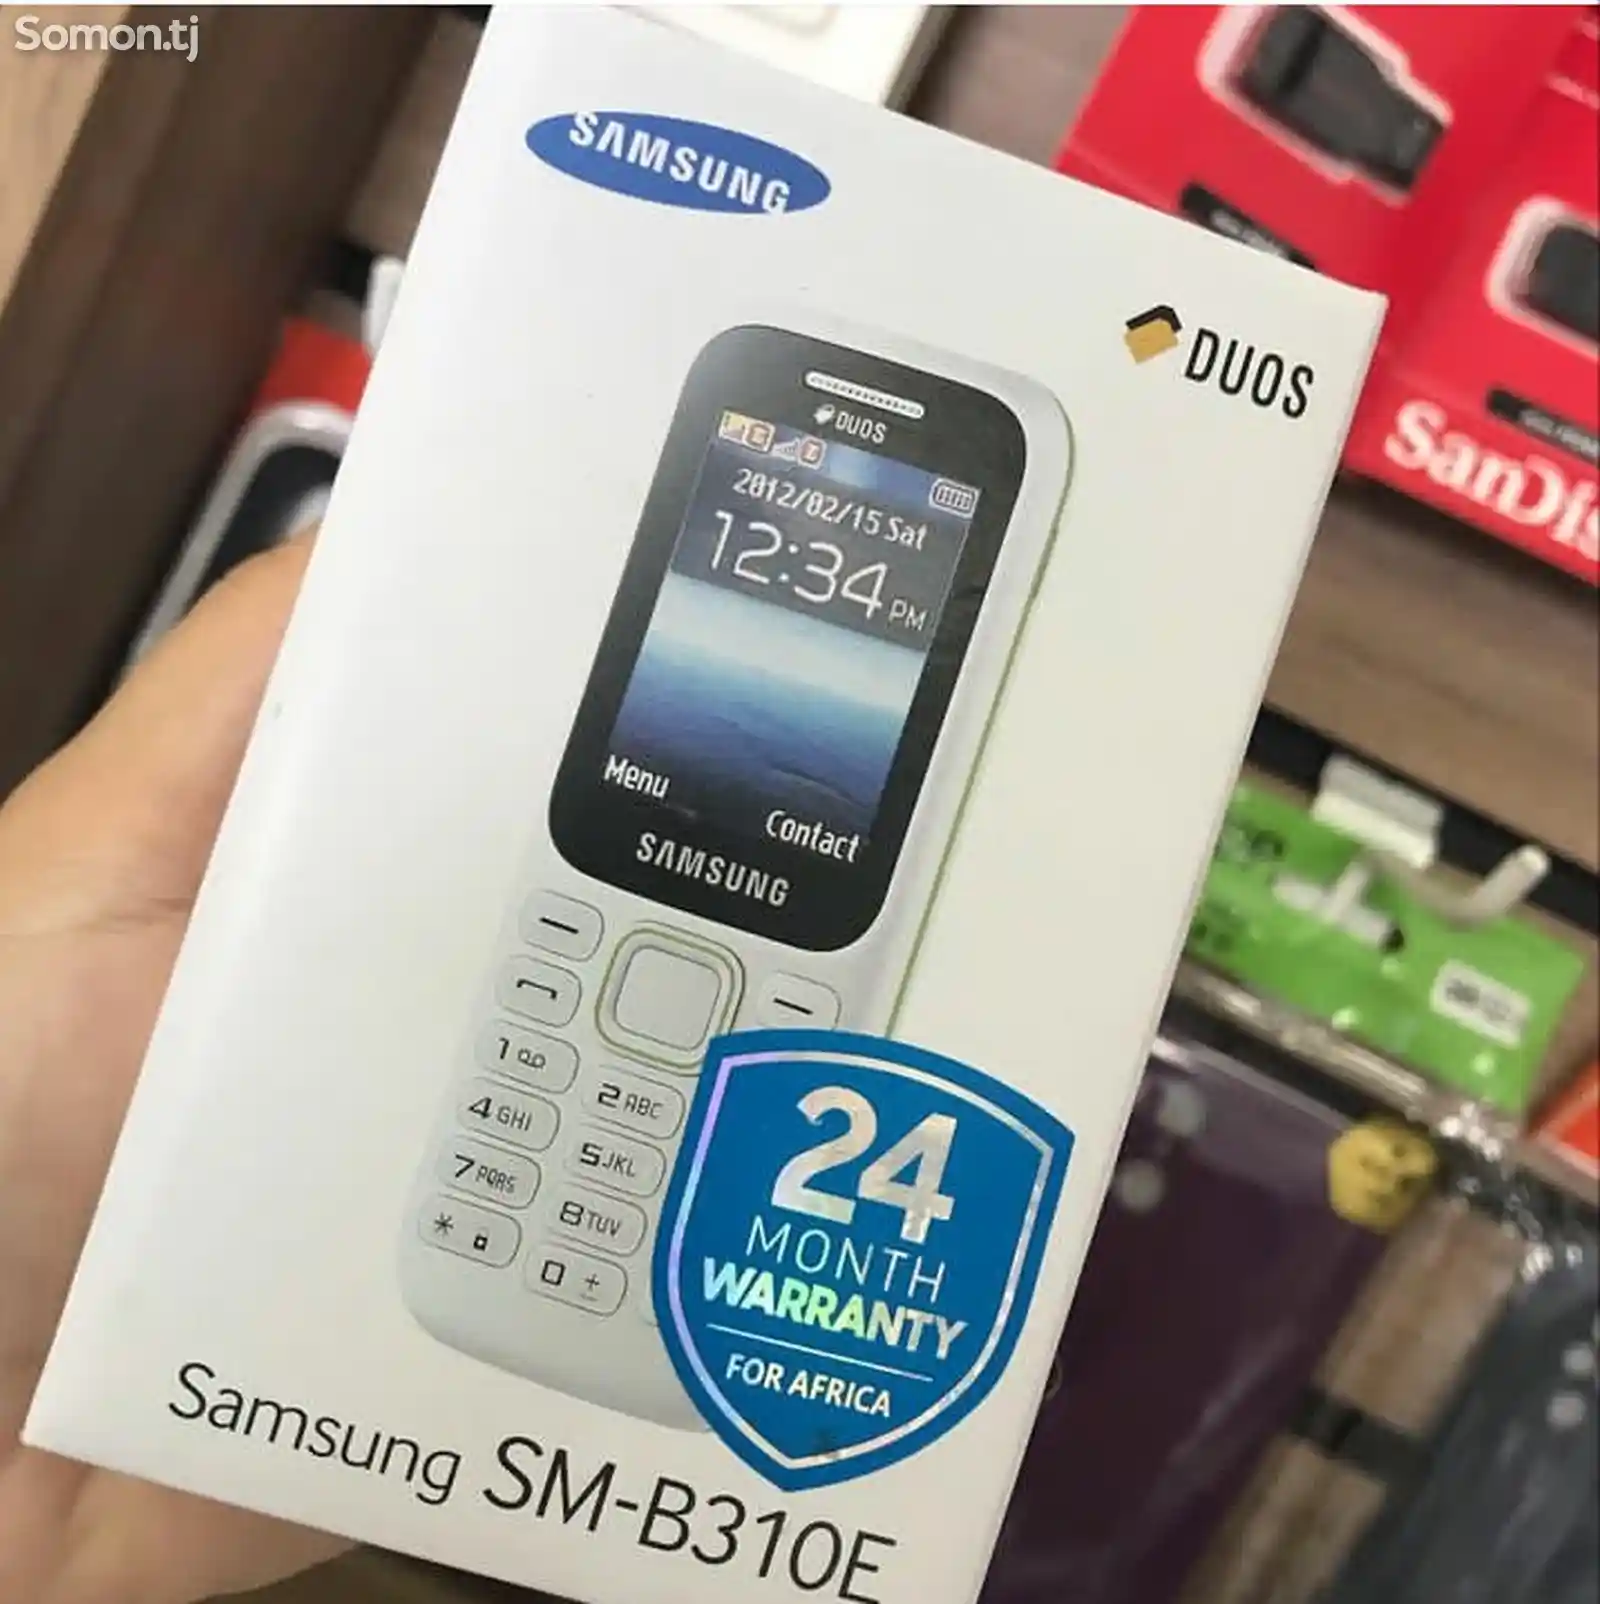 Samsung B310E Duos-1